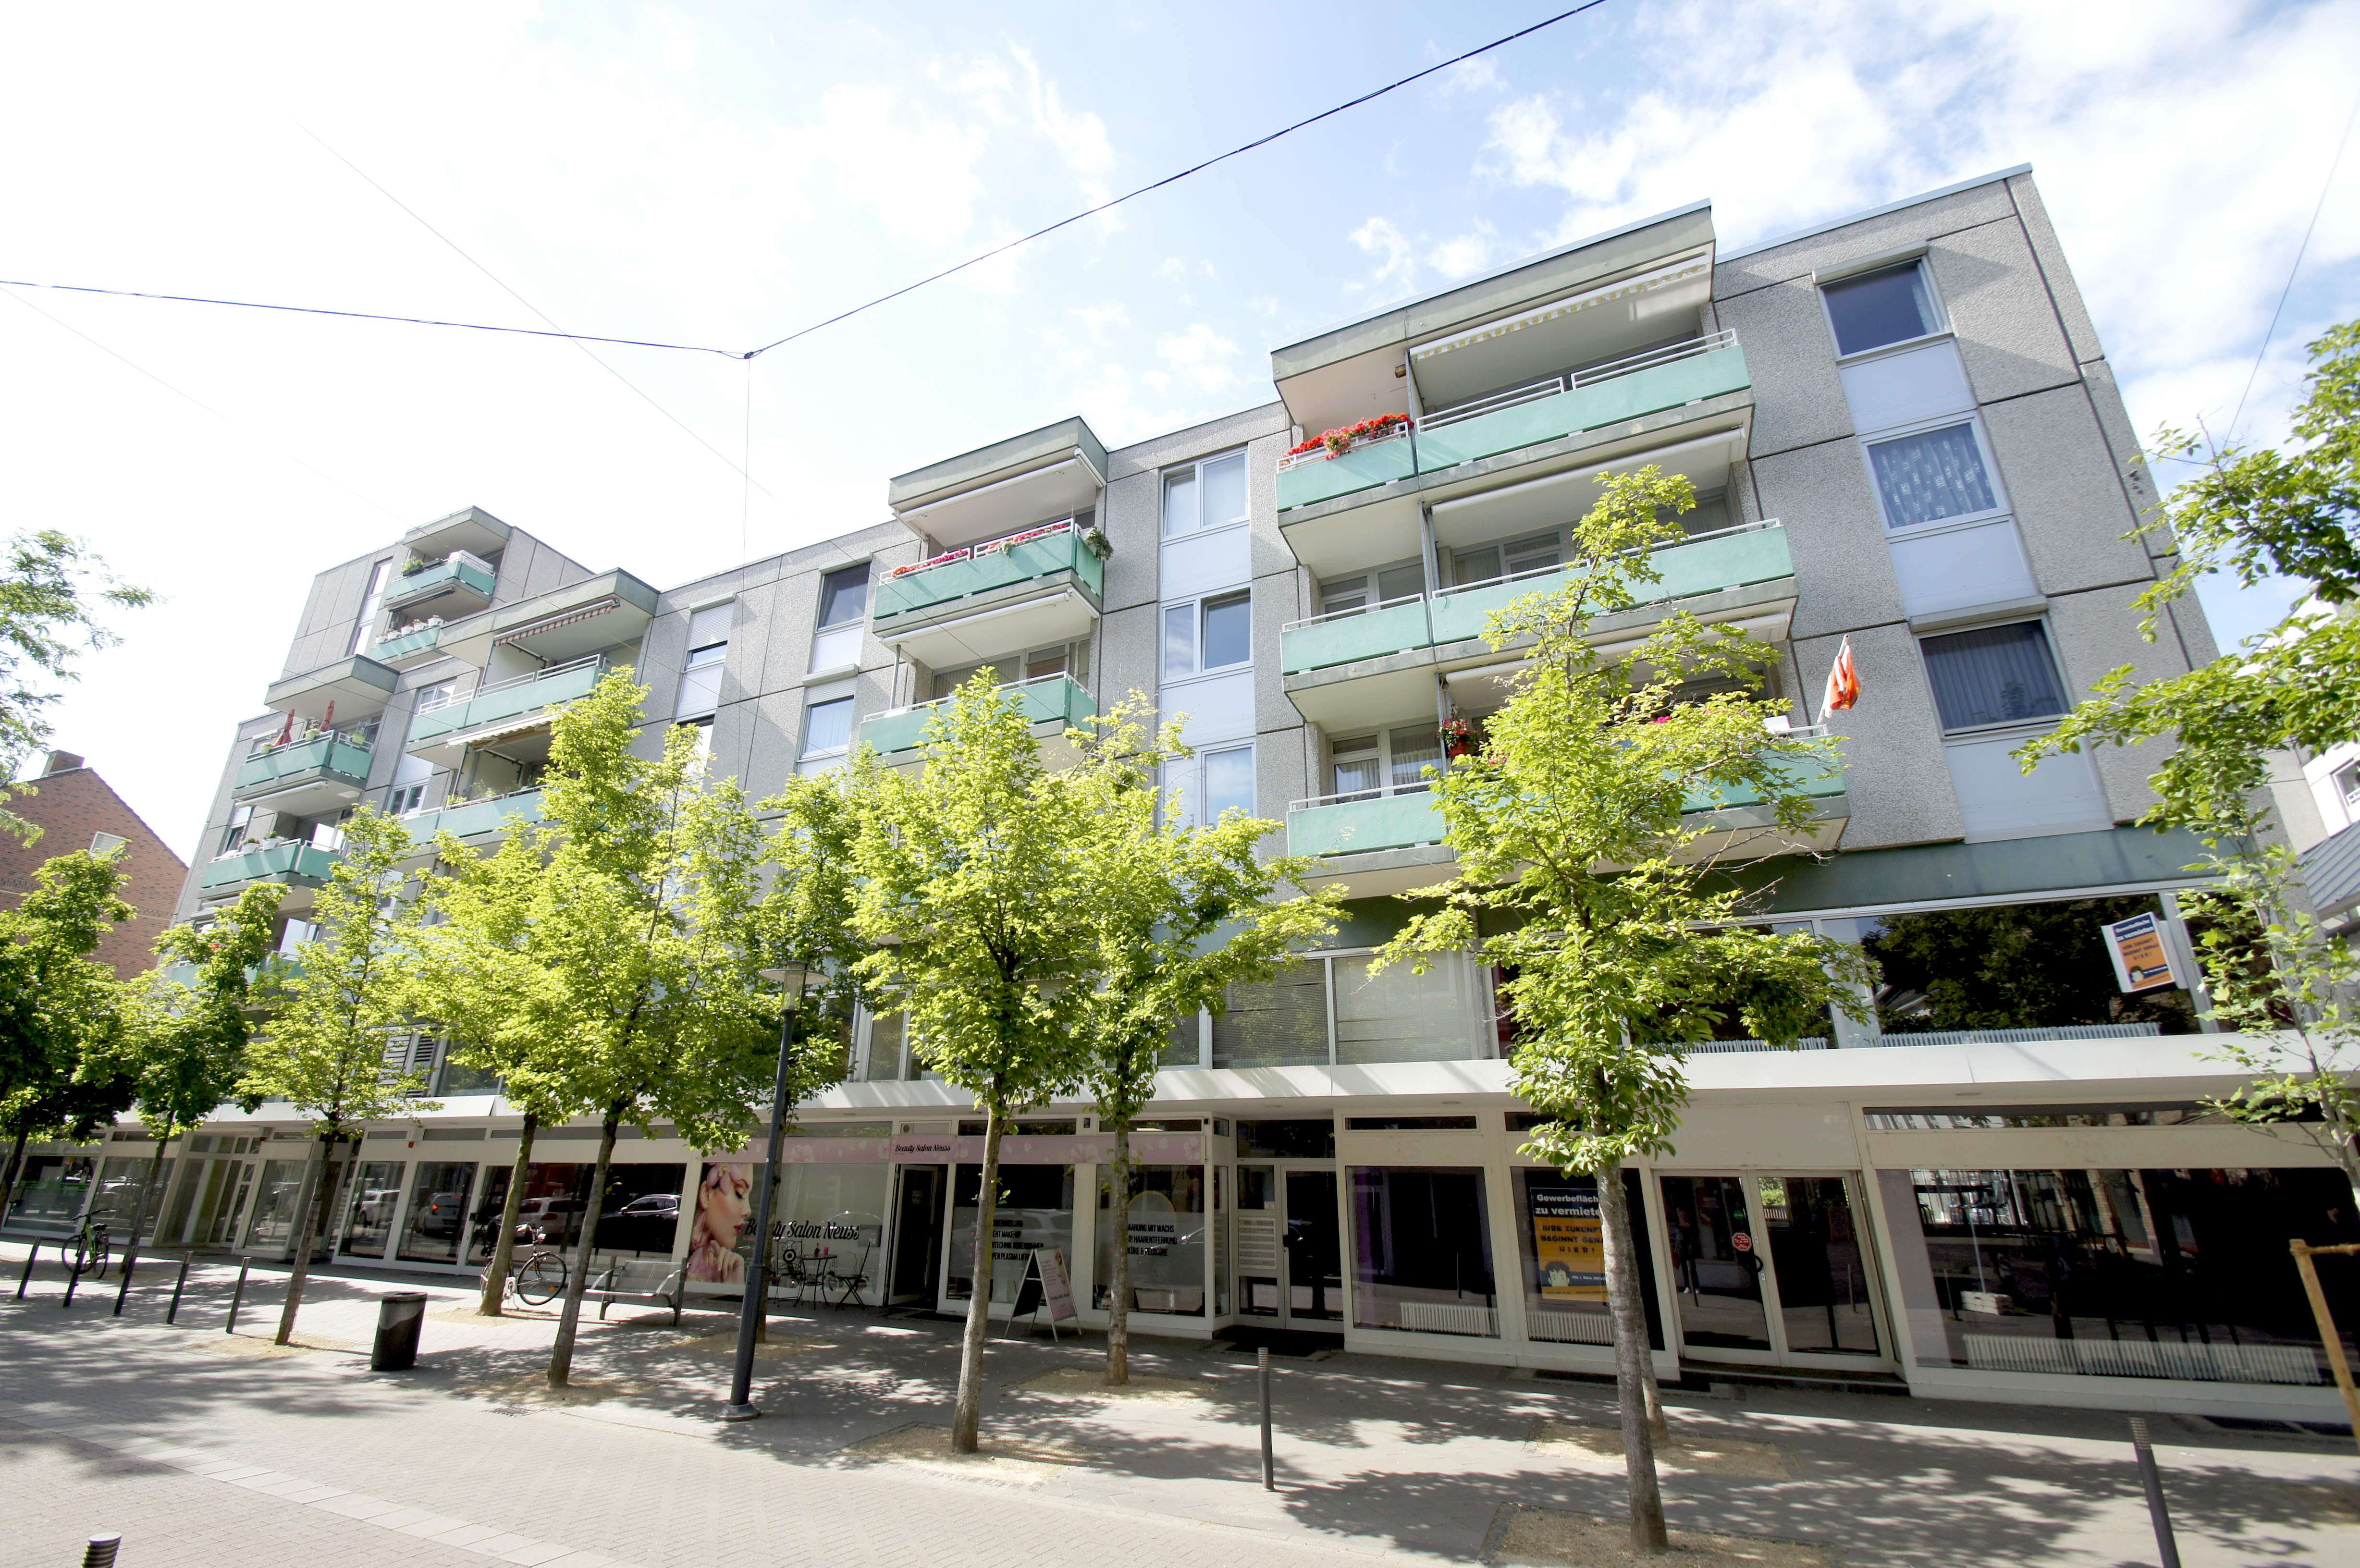 Vermietet! Helles Apartment mit Balkon, EBK, Duschbad, Aufzug  und  Schwimmbadbenutzung